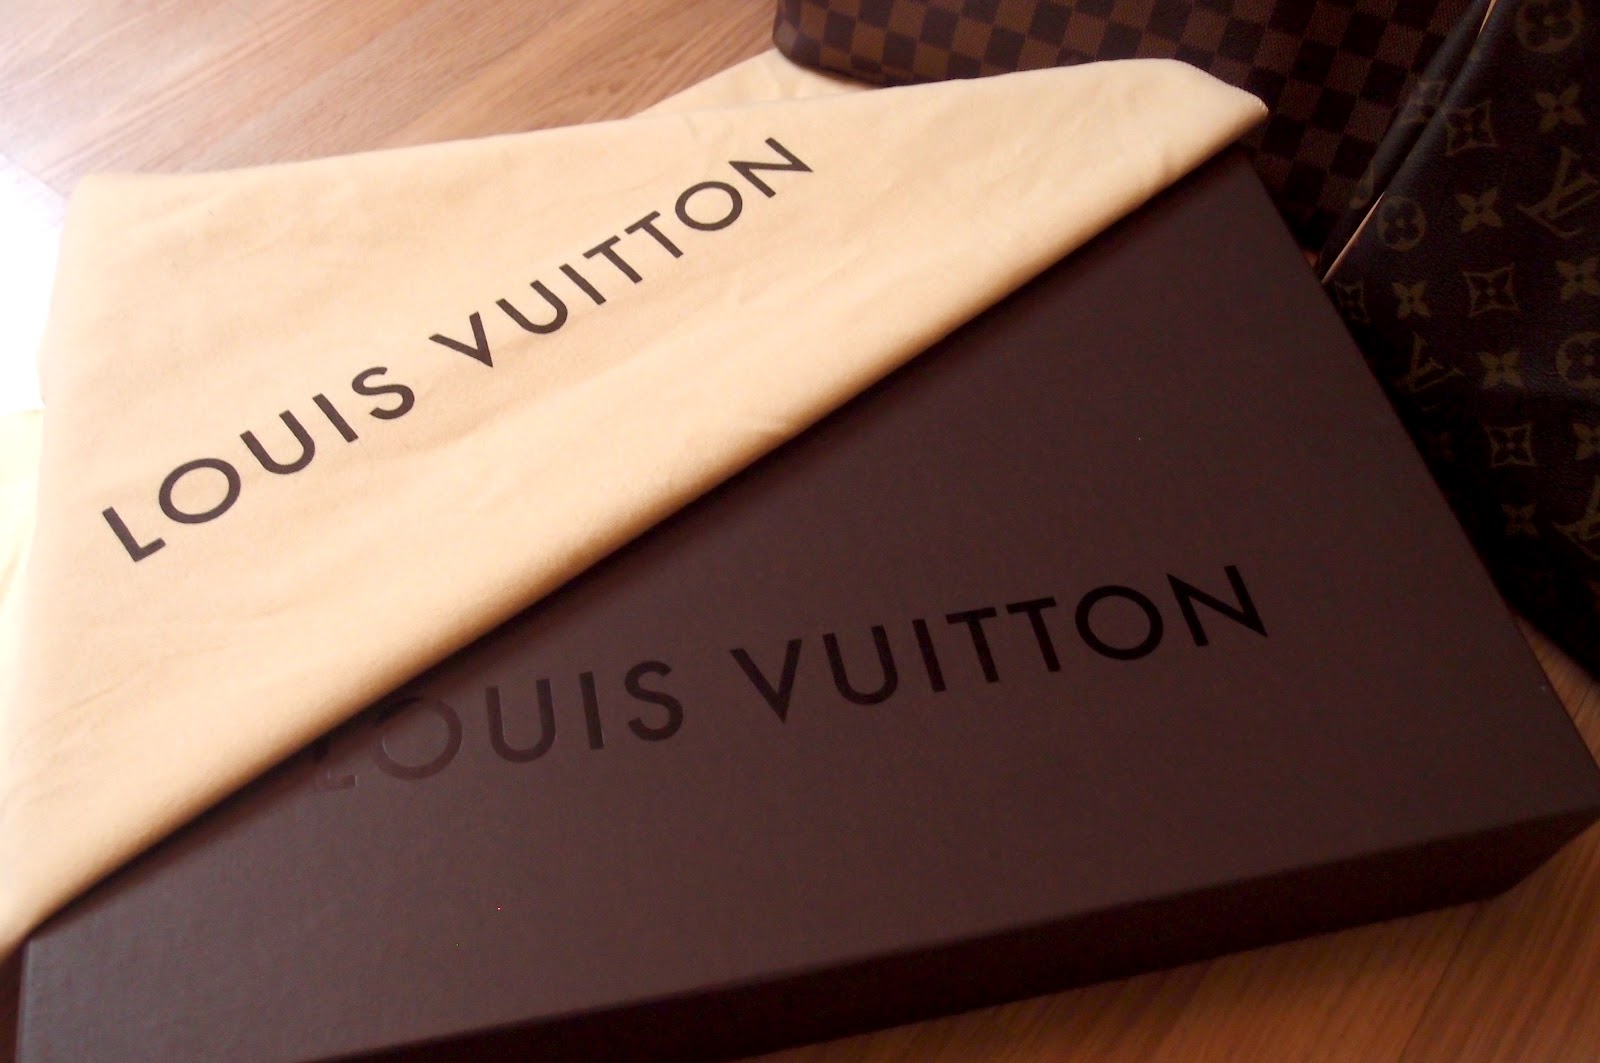 Louis Vuitton Malletier A Paris Dust Bag